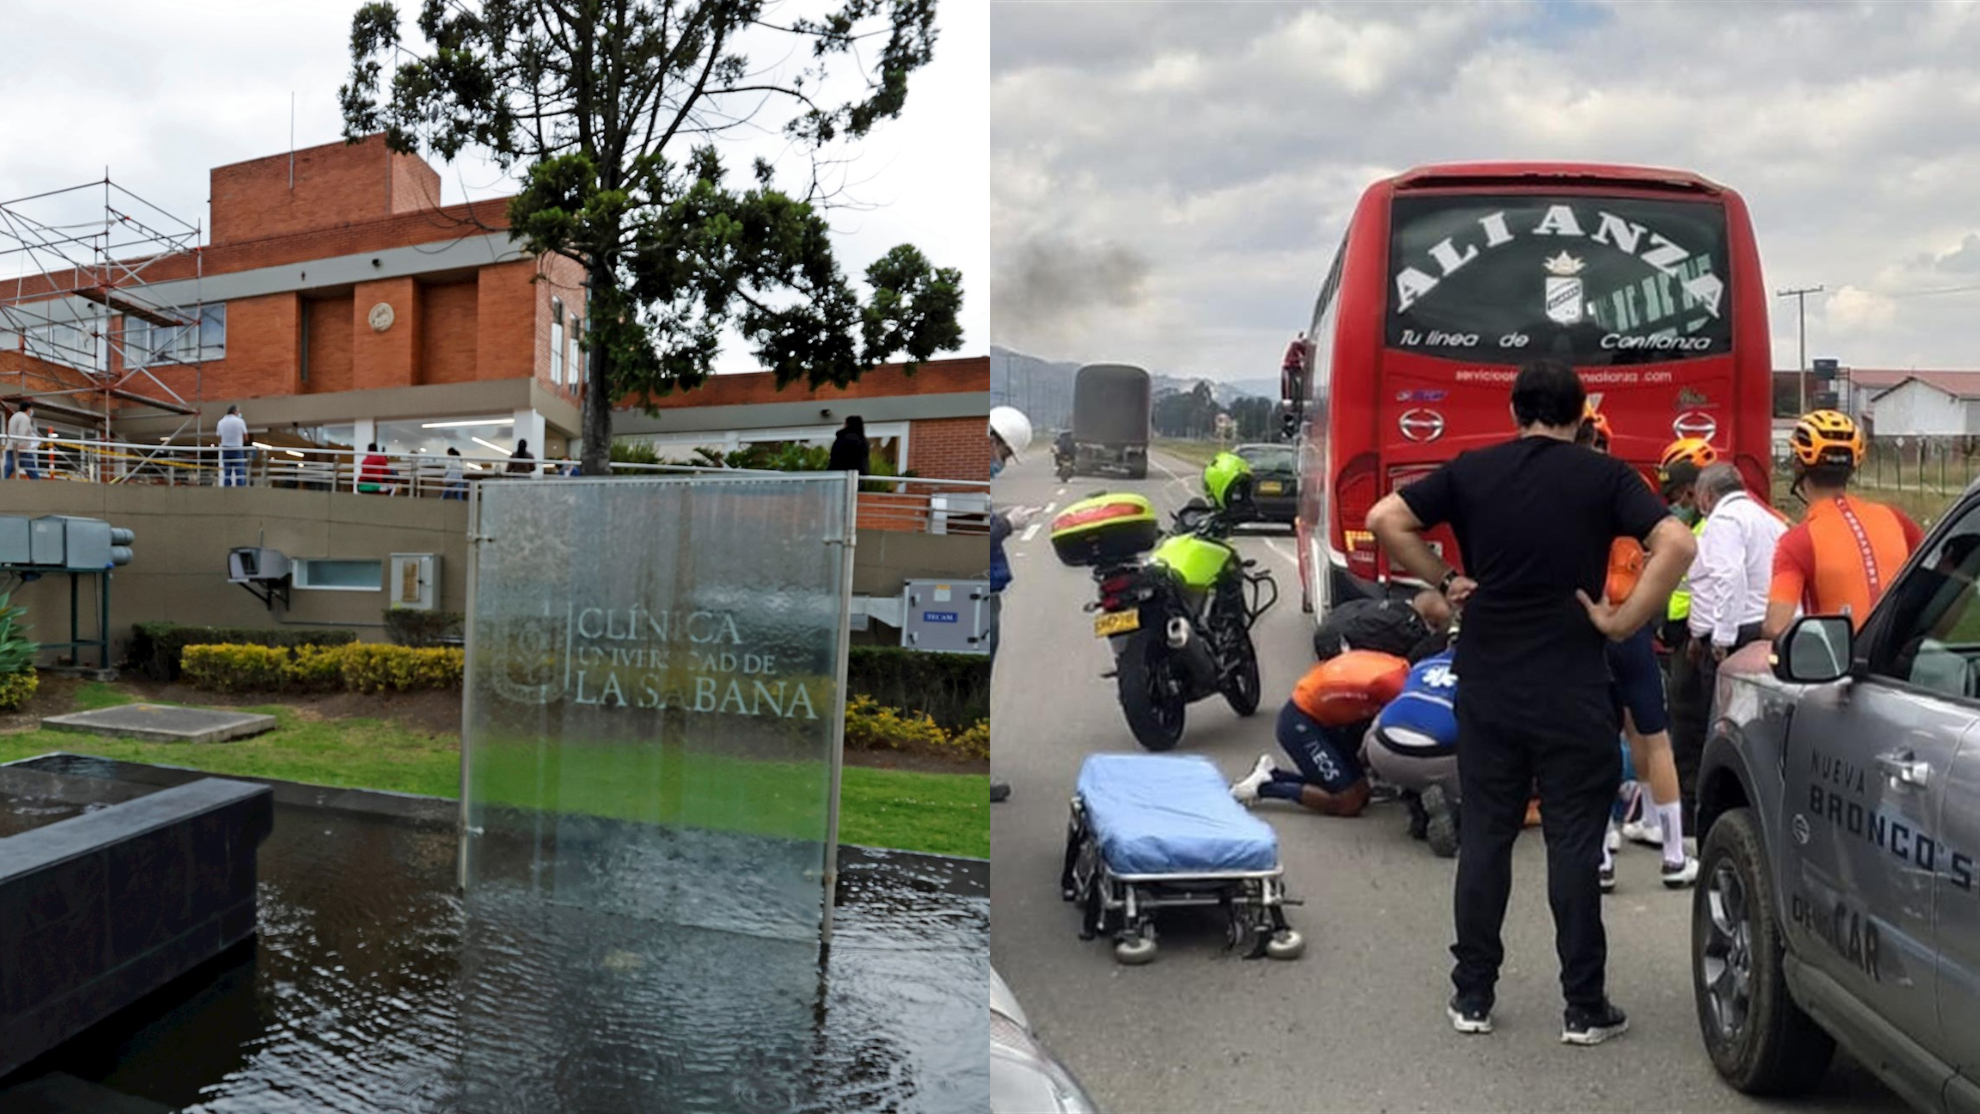 Accident d’Egan Bernal, en direct: état de santé du cycliste et dernières nouvelles après une collision avec un bus à Gachancipá